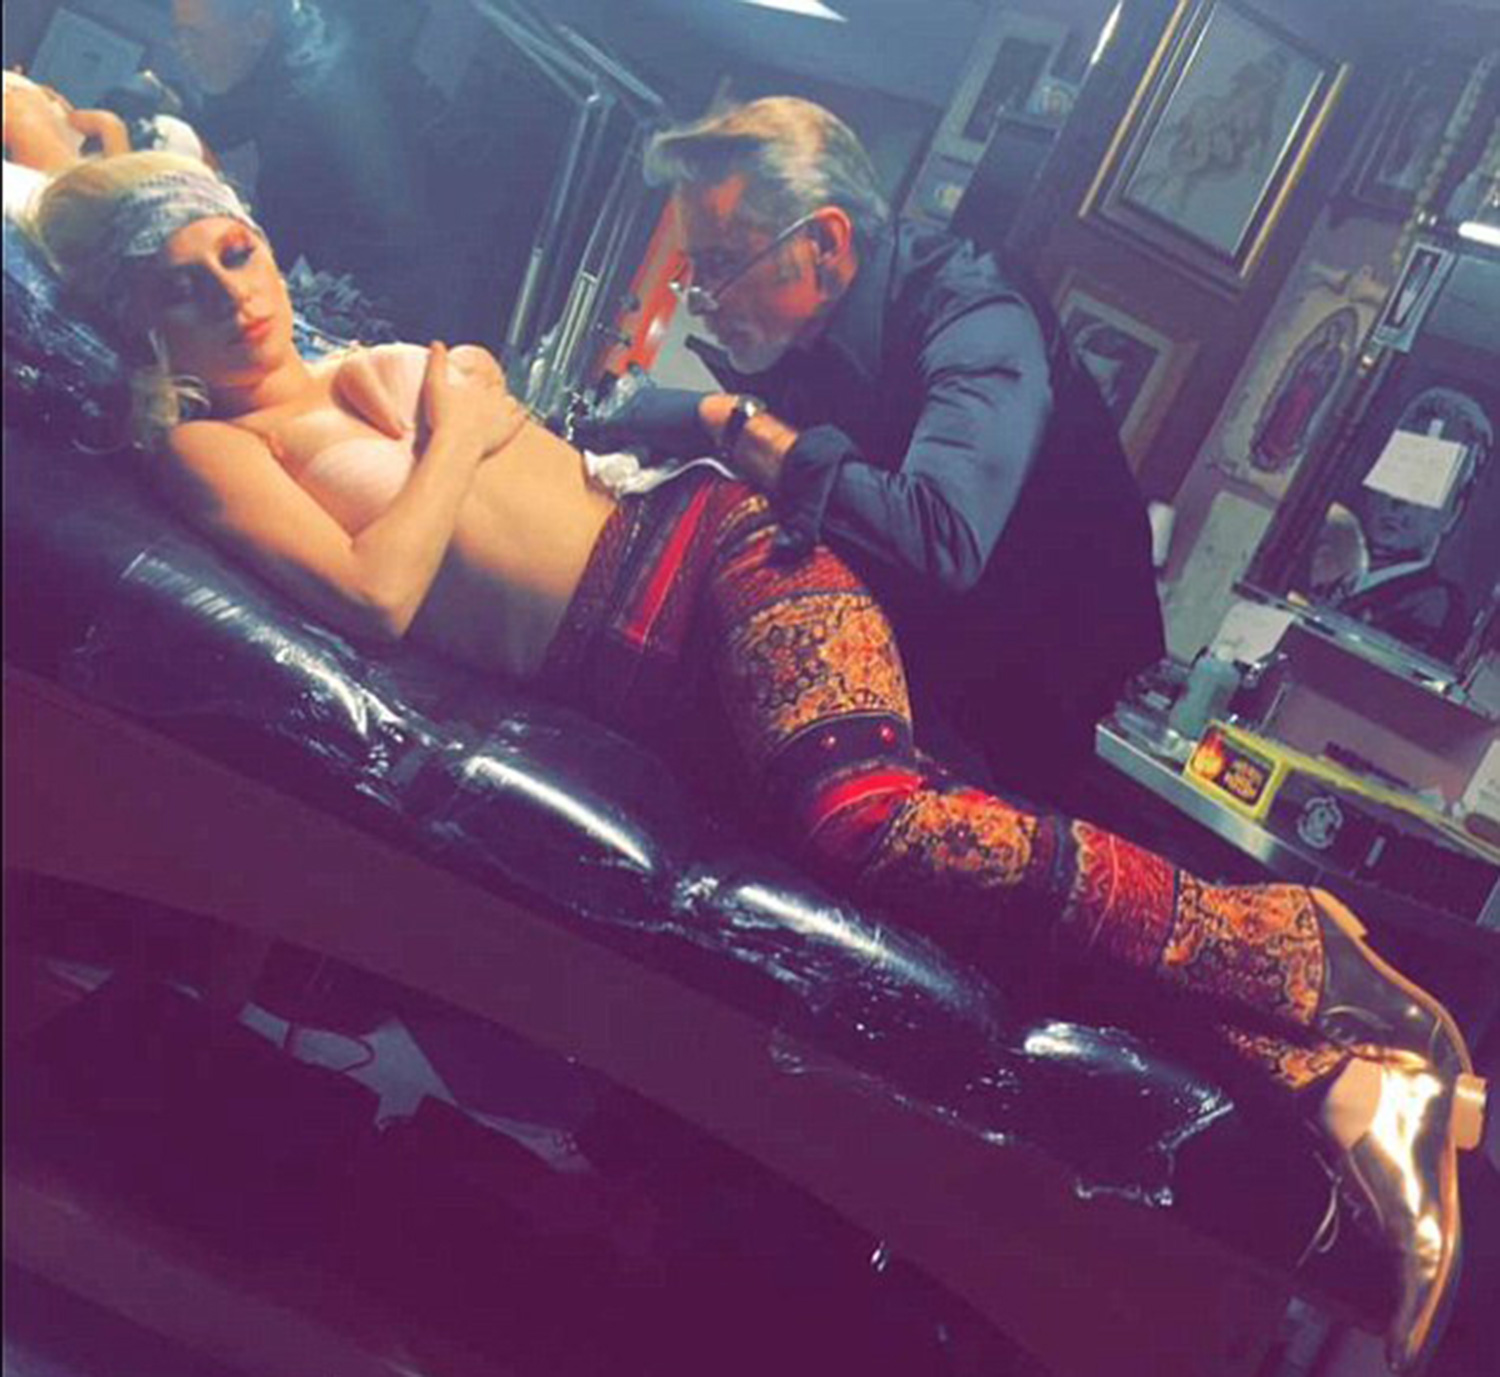 Vedeta a postat fotografii pe Snapchat chiar de pe masa din salonul de tatuaje.